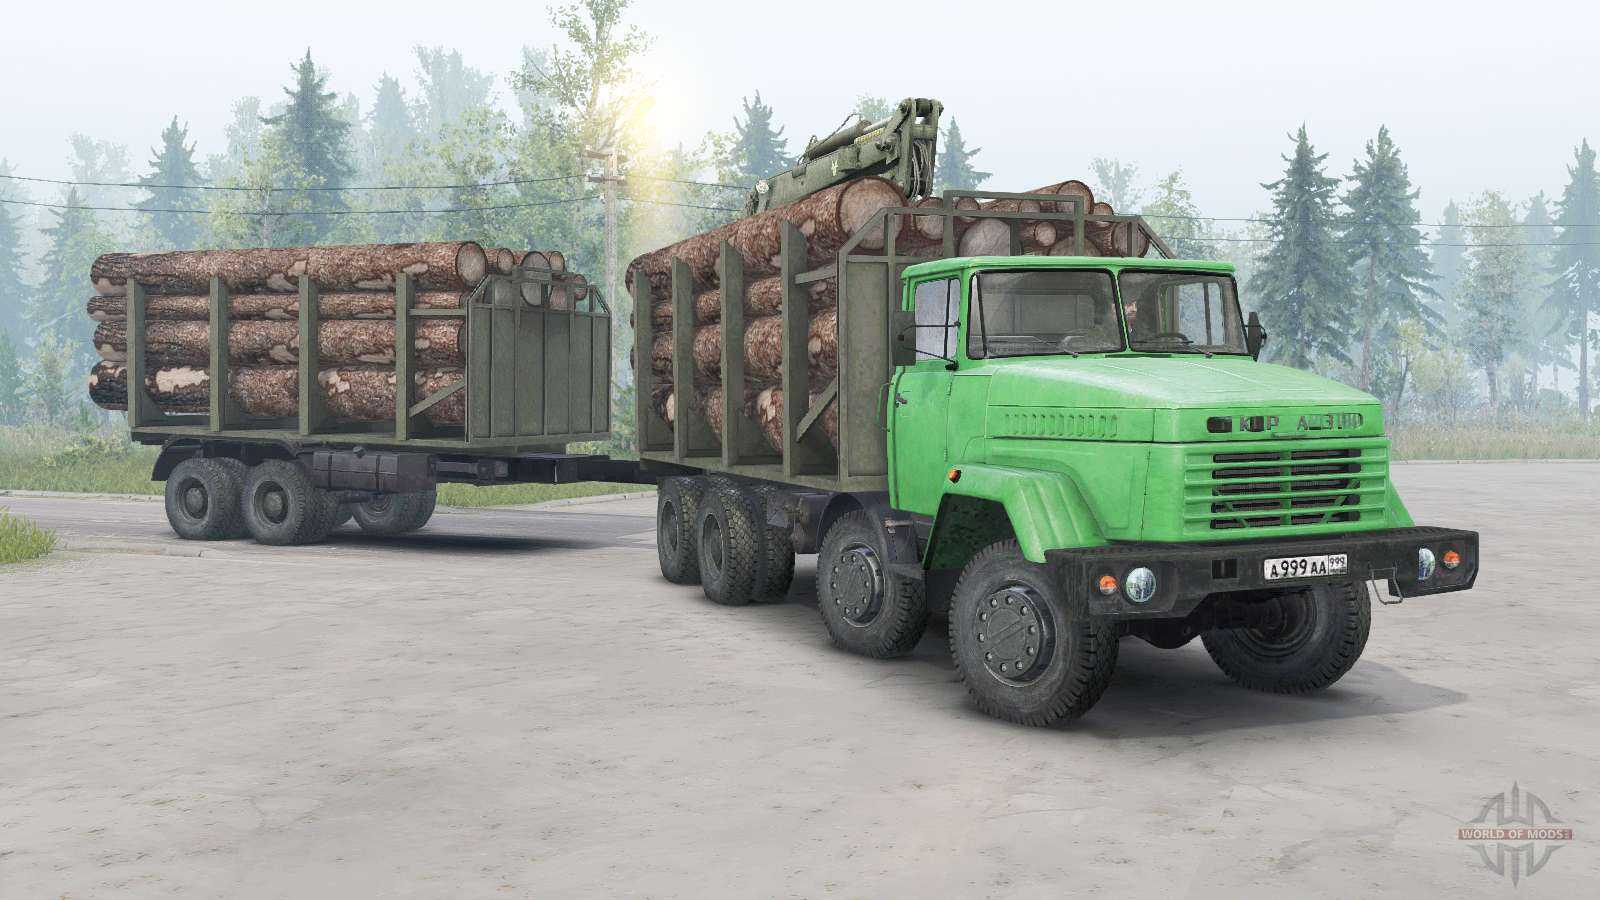 Компания краз — известный украинский производитель грузовых автомобилей